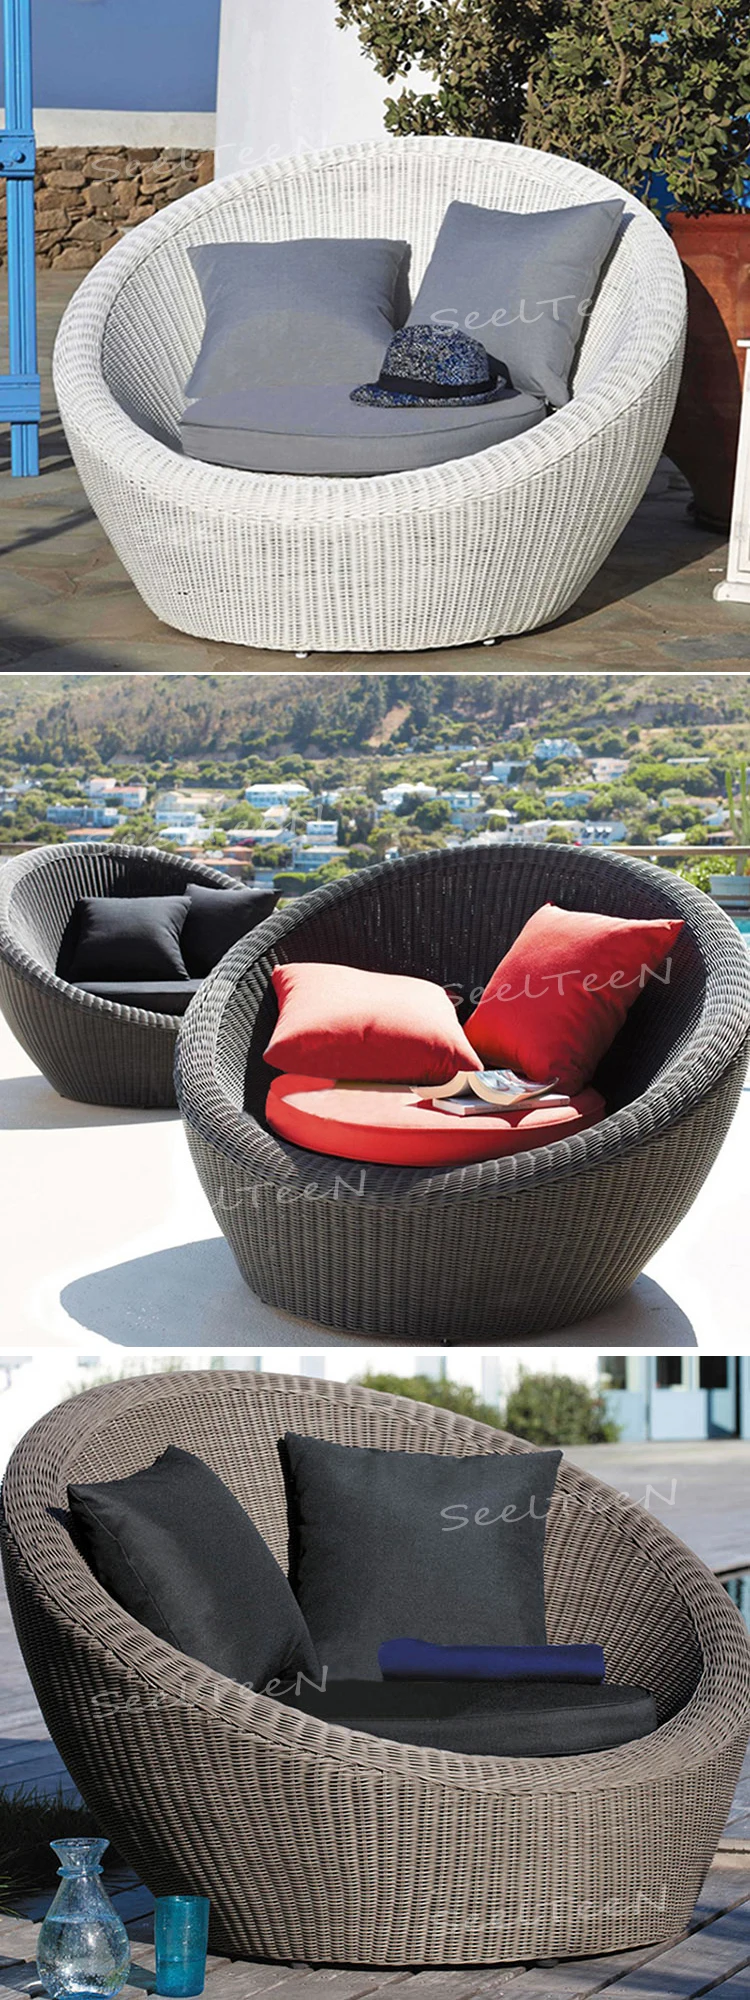 Hotel garden rattan round with soft cushion outdoor restaurant furniture